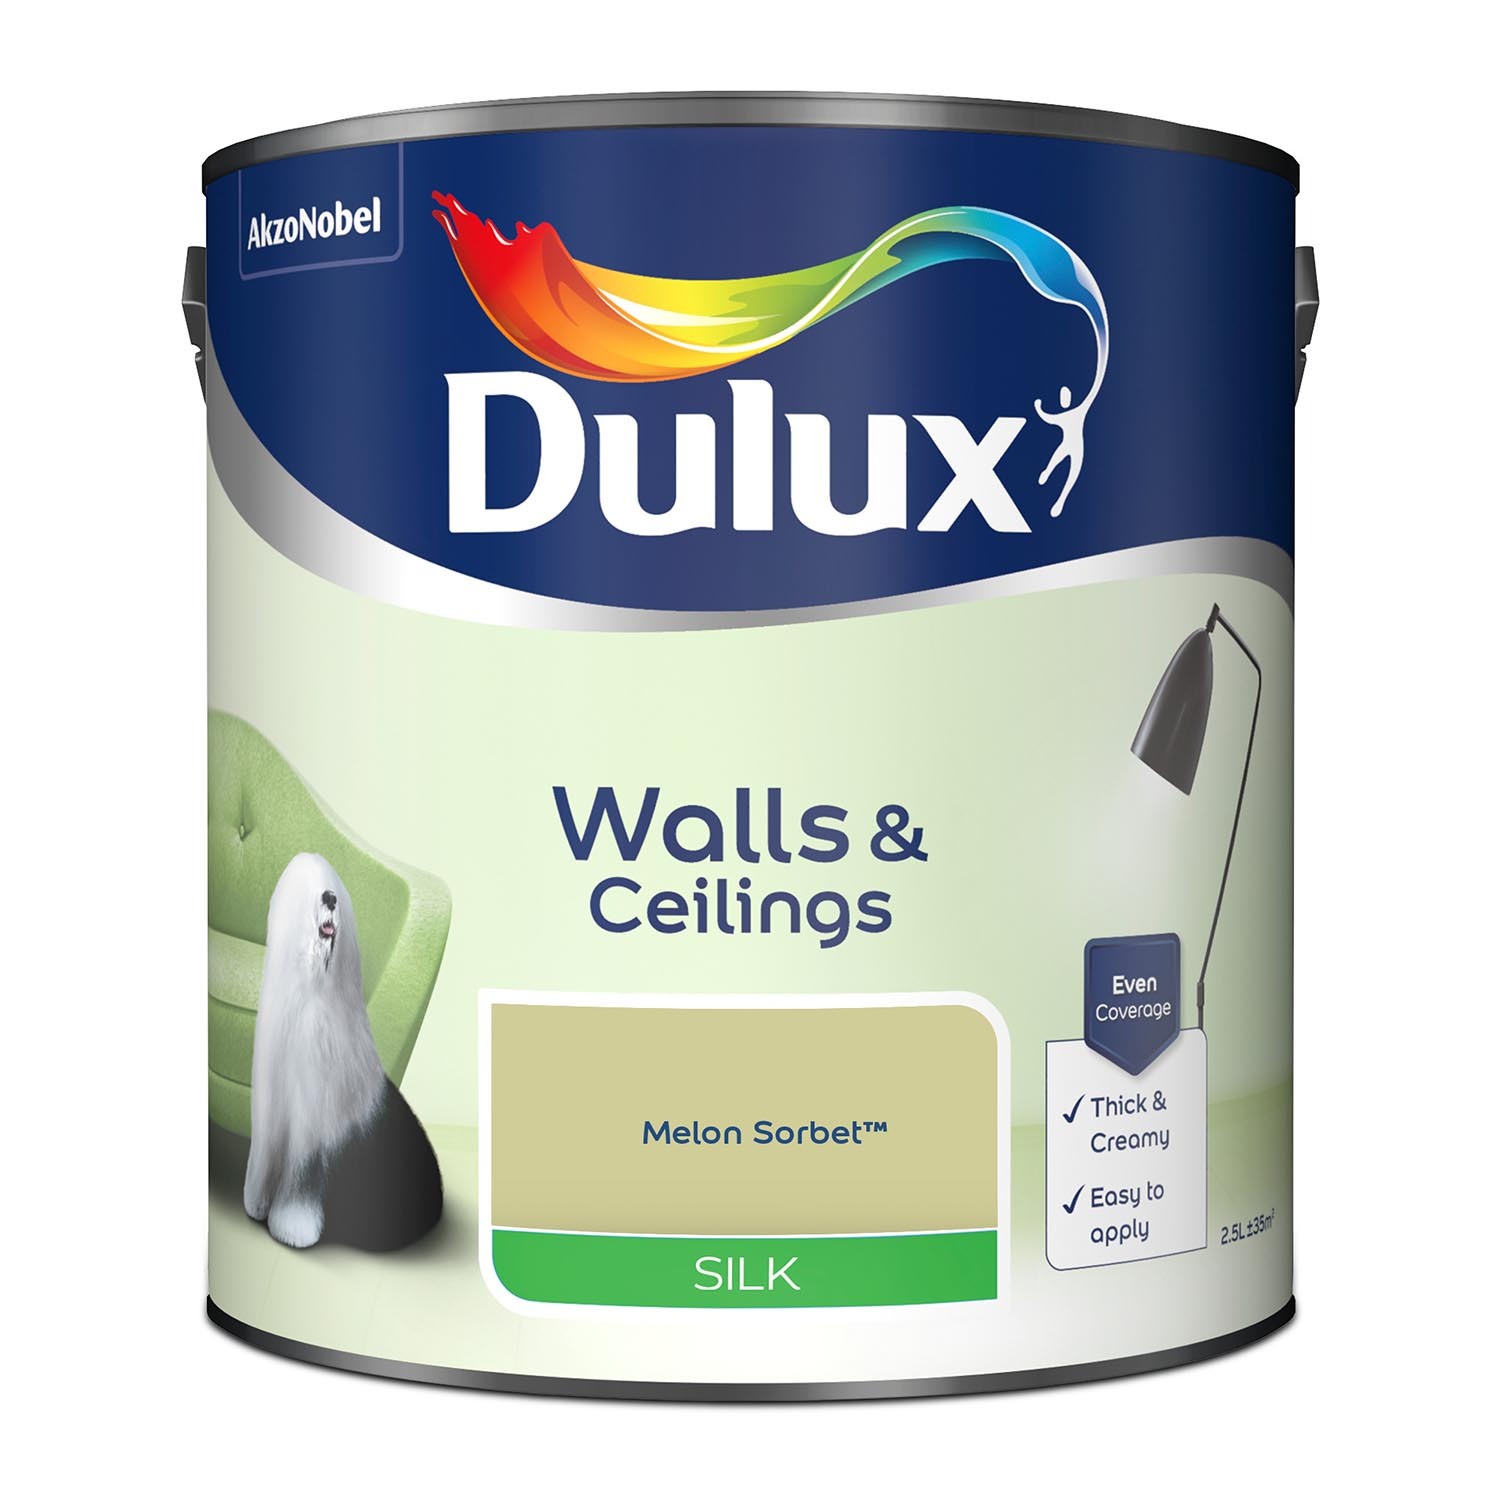 Dulux Walls & Ceilings Melon Sorbet Silk Emulsion Paint 2.5L Image 3